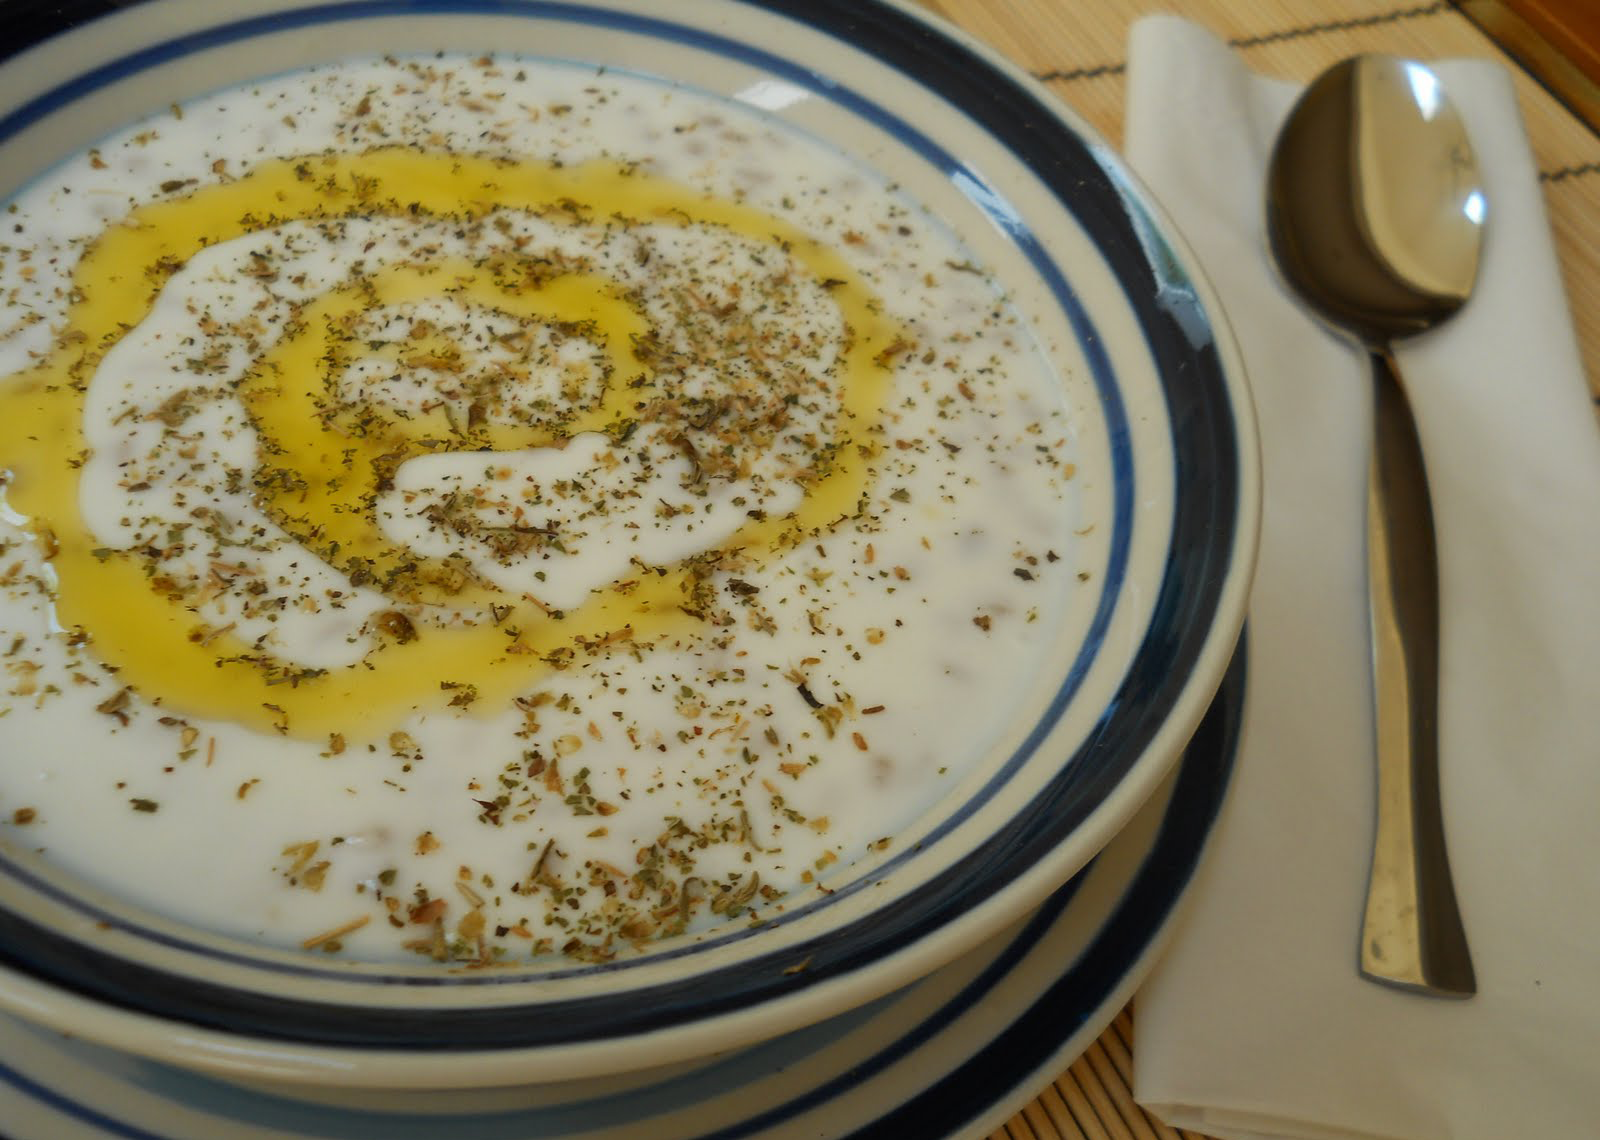 Joghurtsuppe mit Nudeln - Erişteli Yoğurt Çorbası - Türkische Gerichte